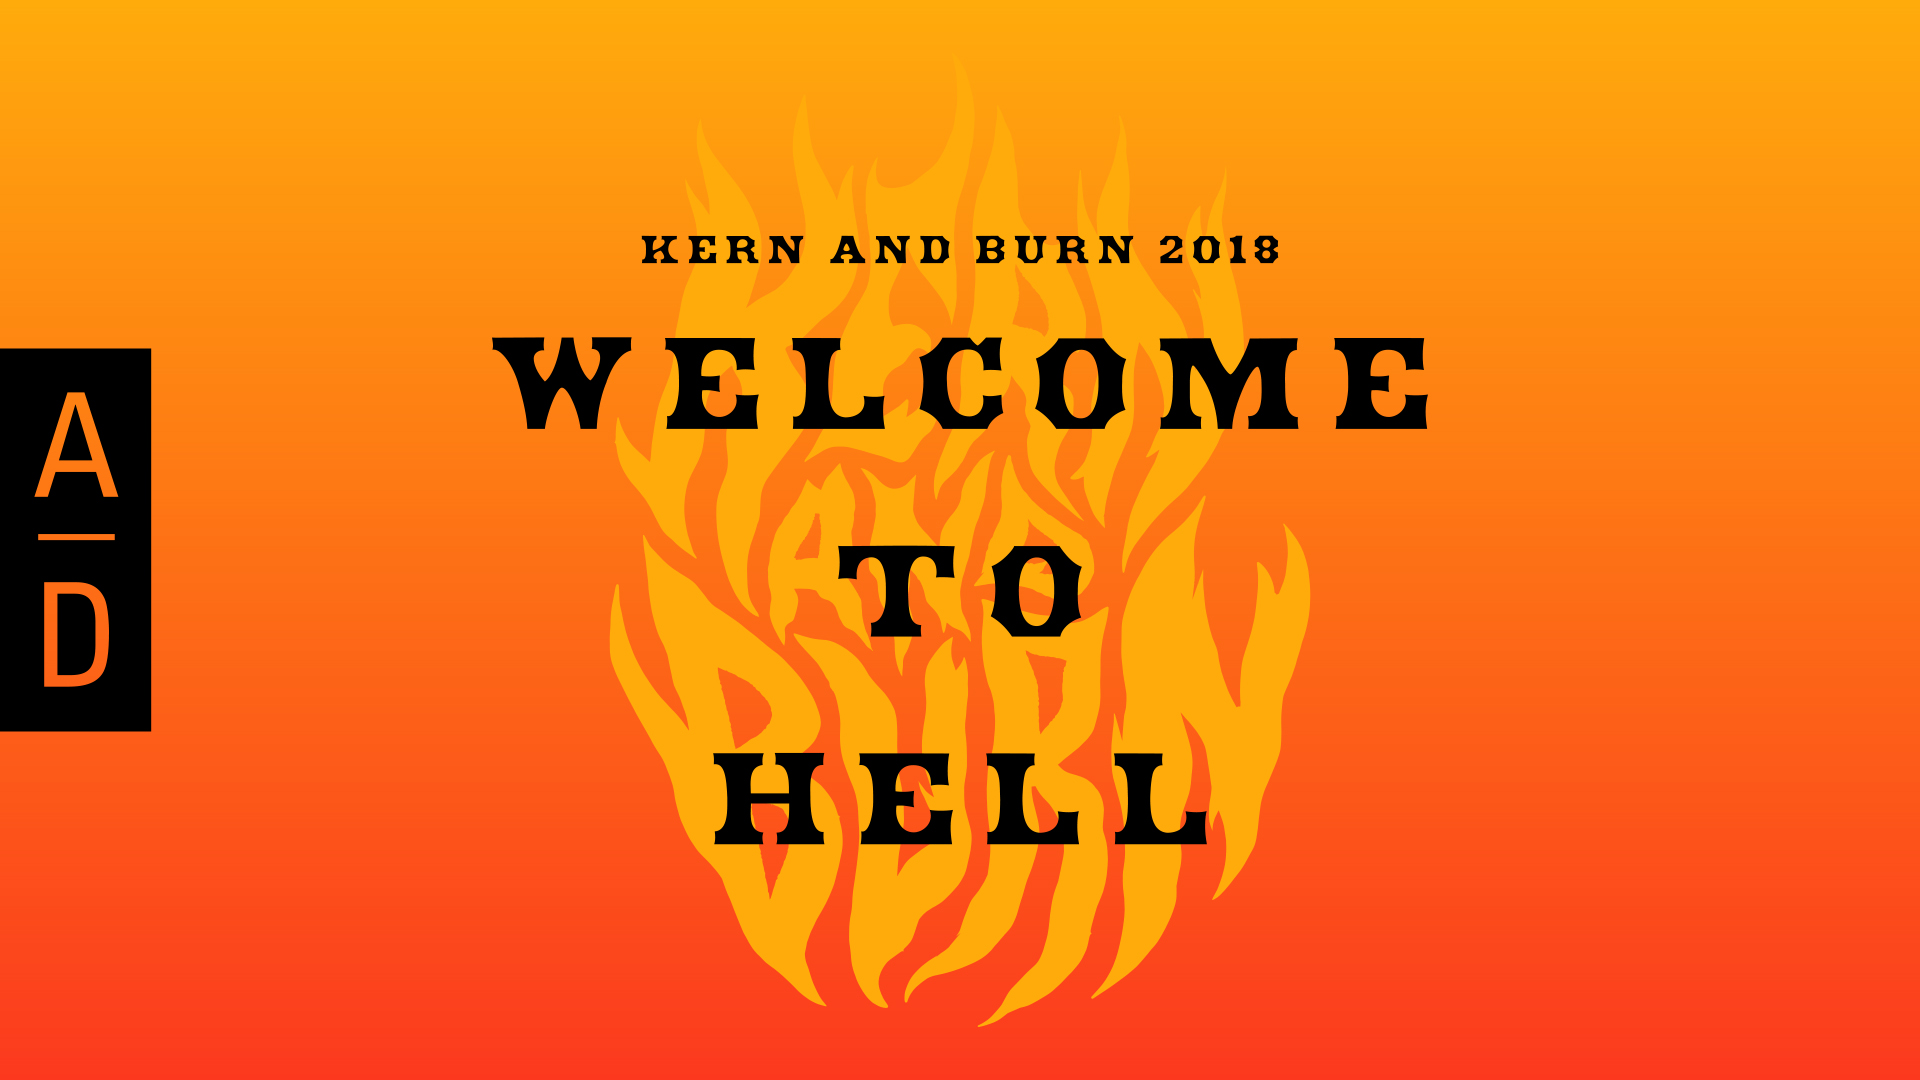 KERN AND BURN WELCOMETO HELL.jpg